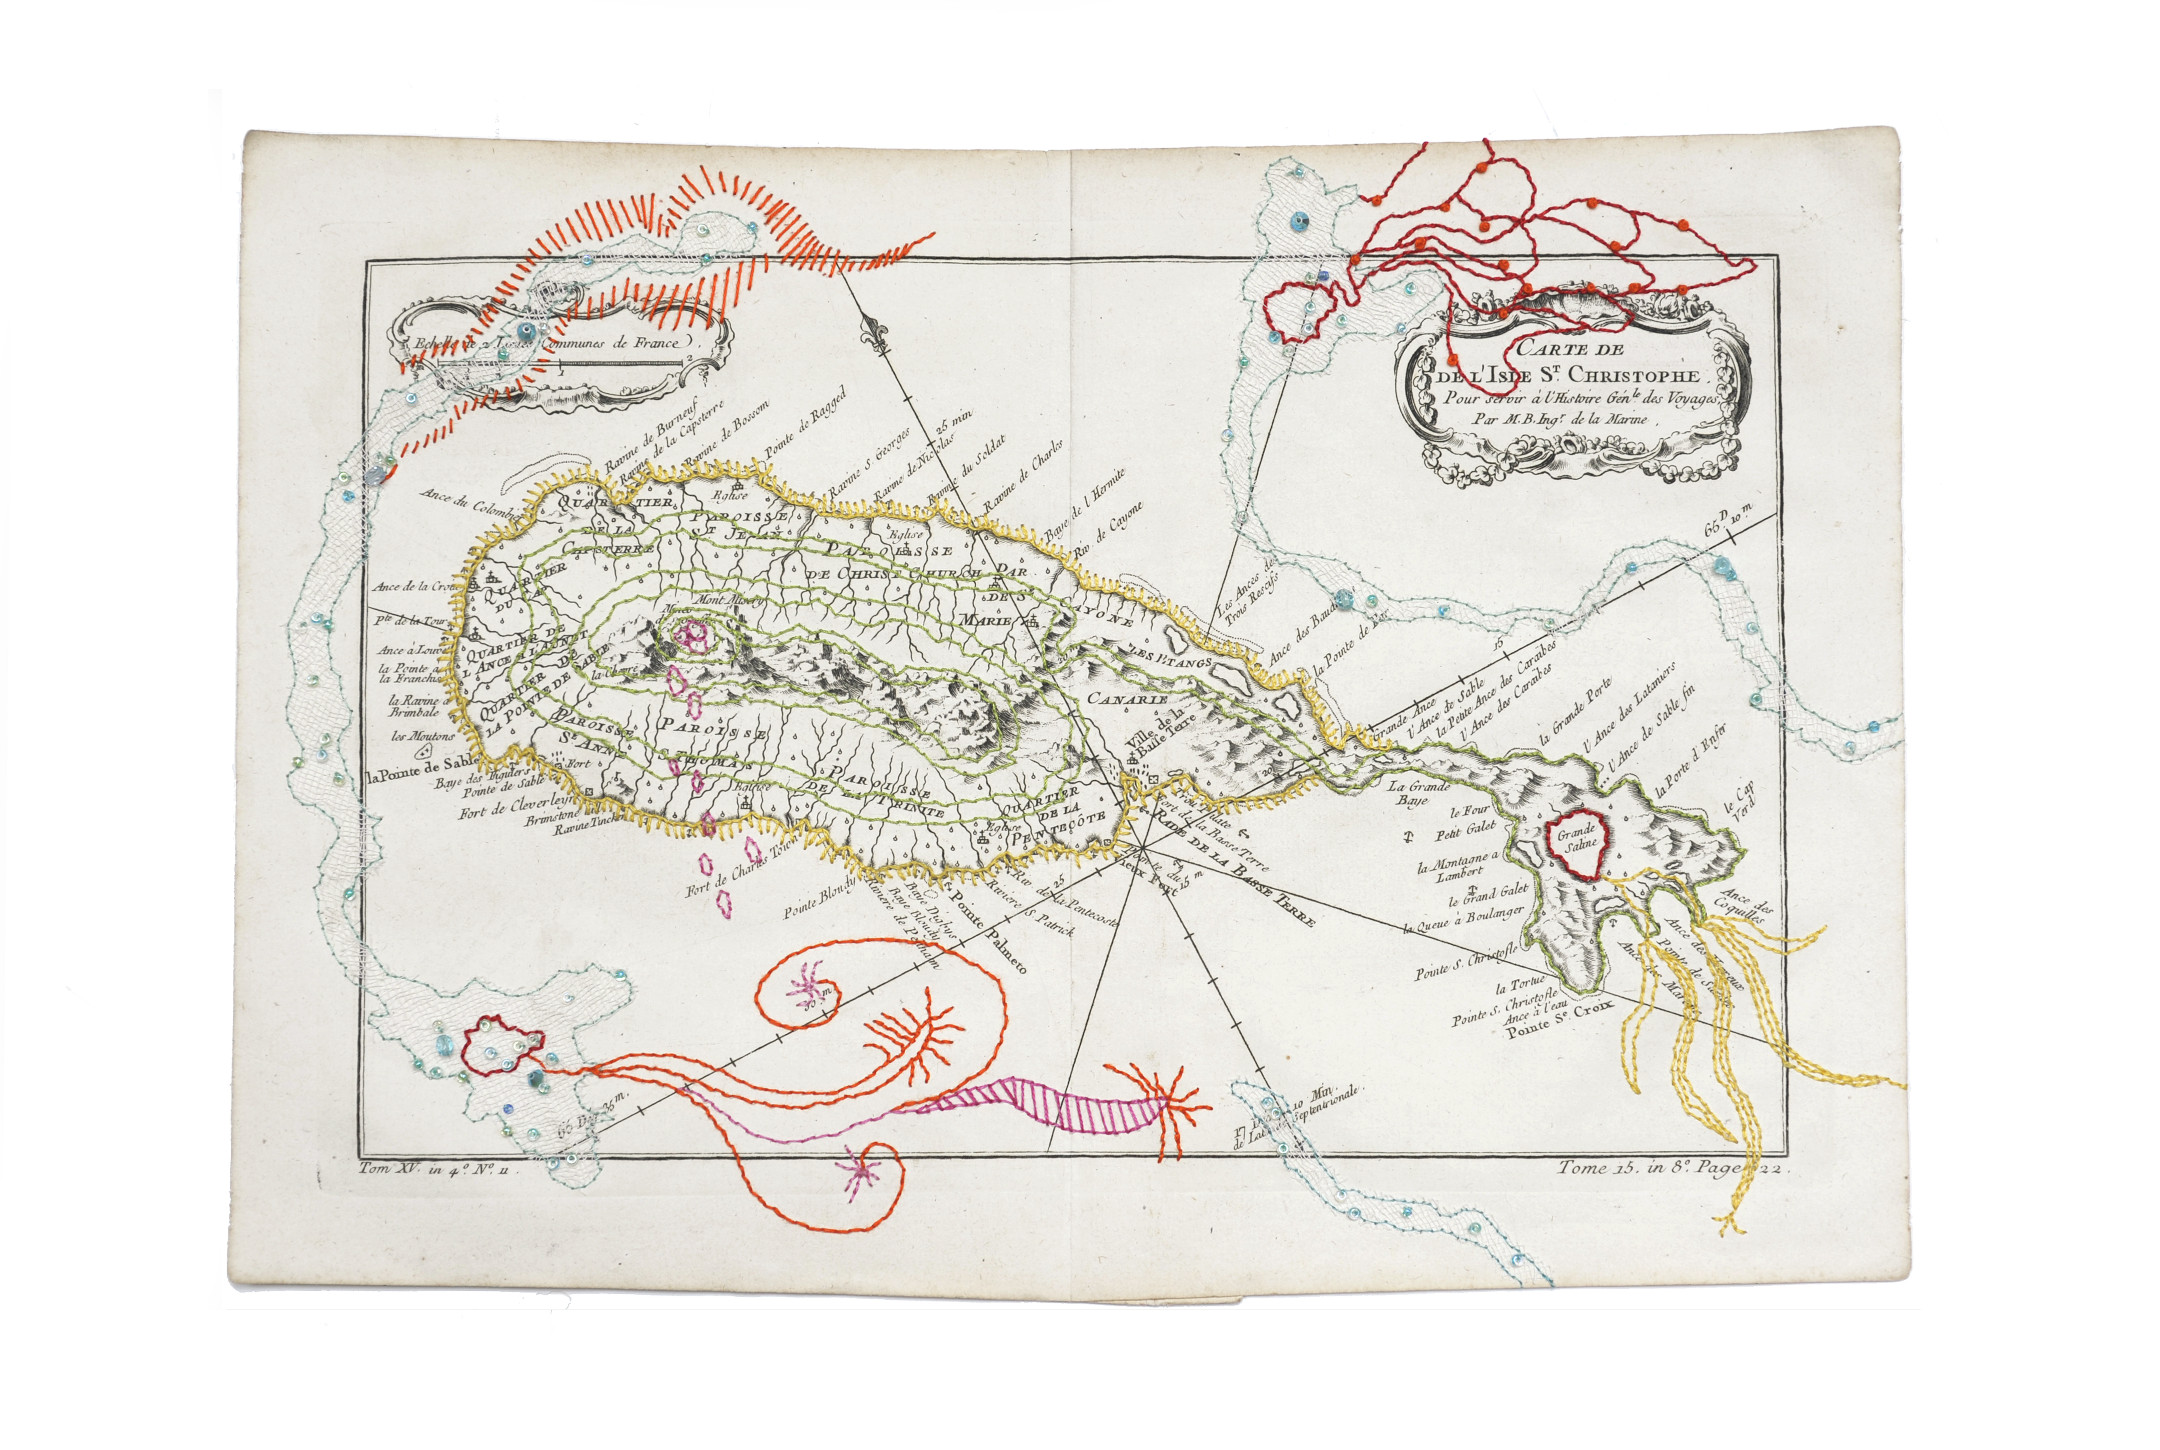 Nouveau Monde 4 - Broderies multicolores réalisées sur une carte ancienne de l'Ile Saint Christophe par Sylvie Hénot artiste plasticienne française